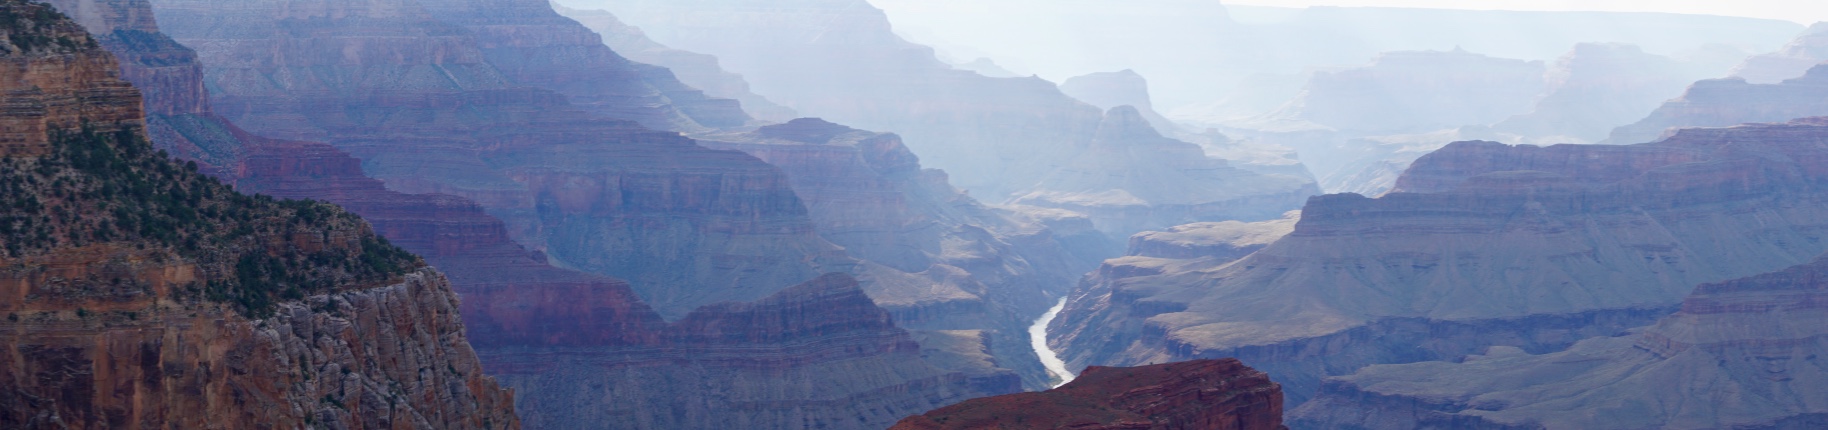 Roteiro para visitar o Grand Canyon